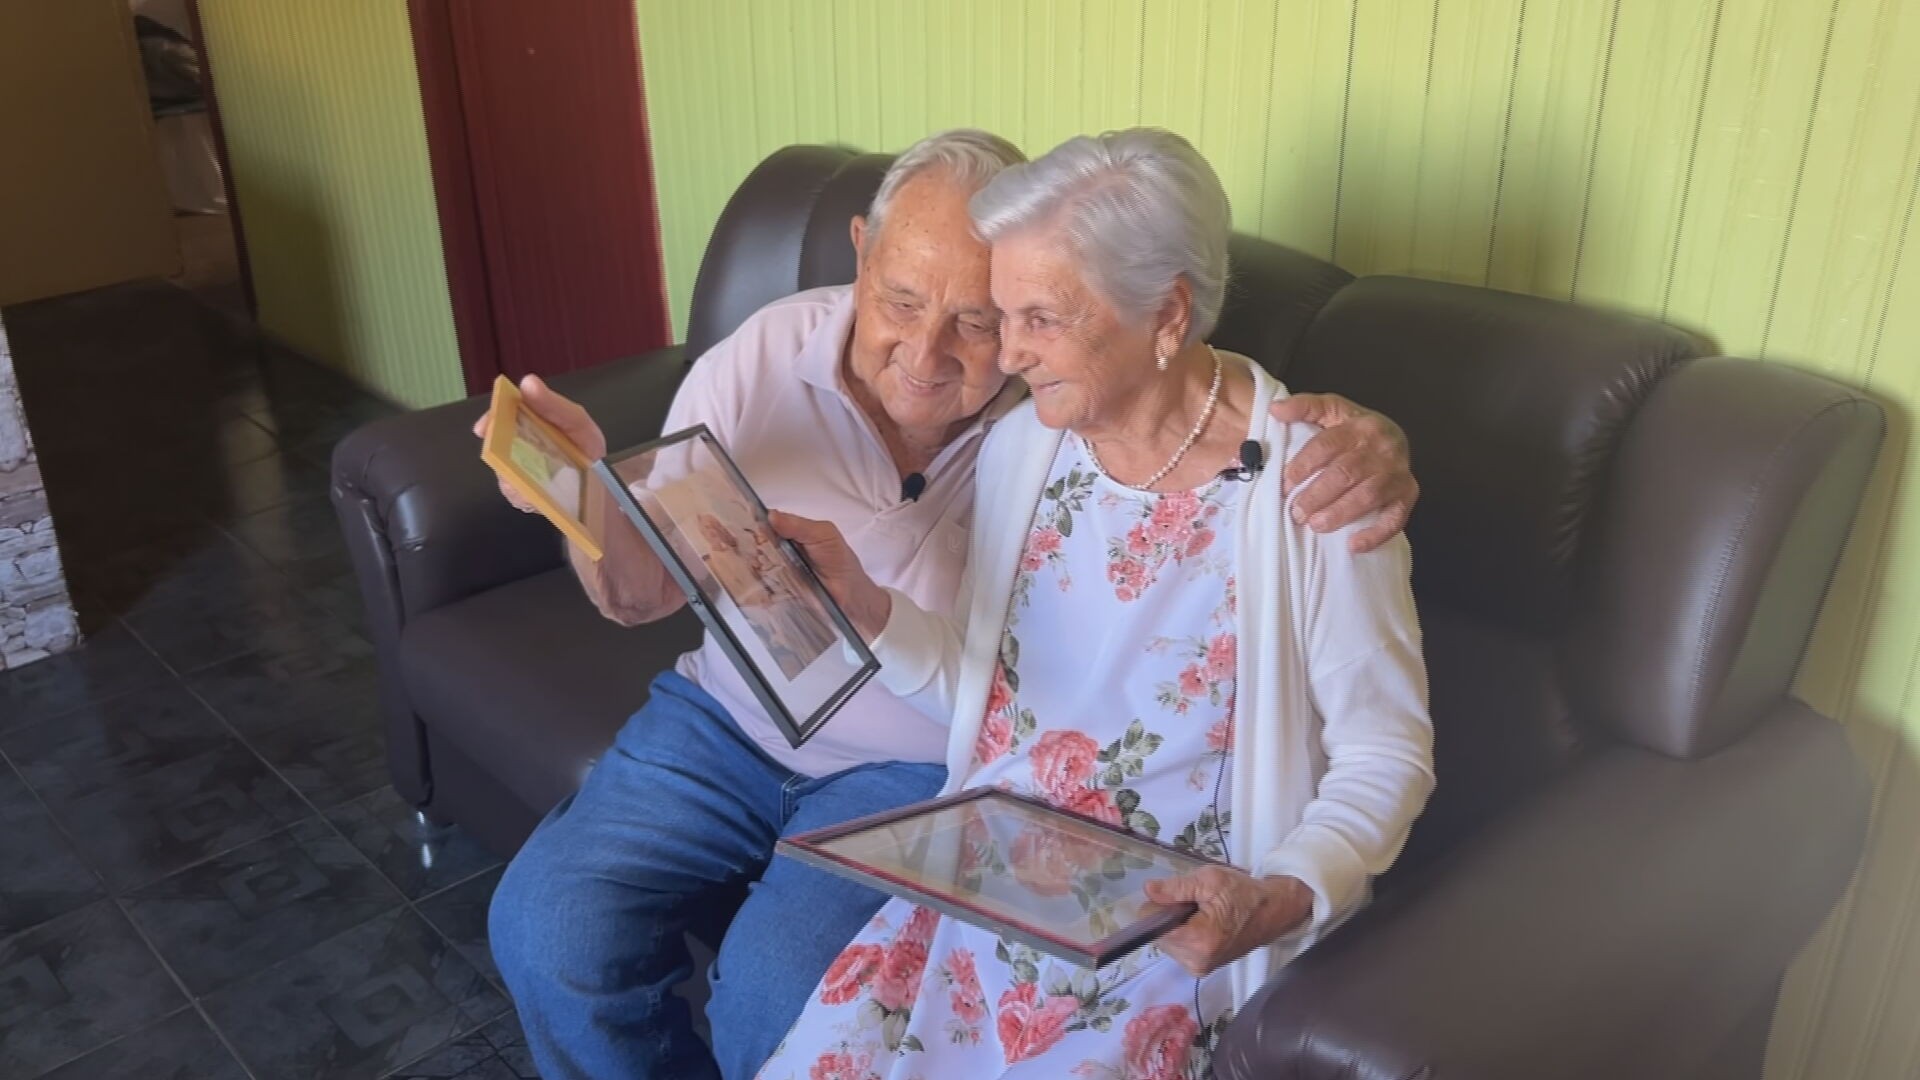 Há 70 anos junto, casal de idosos que faz sucesso na internet conta como tudo começou em festa: 